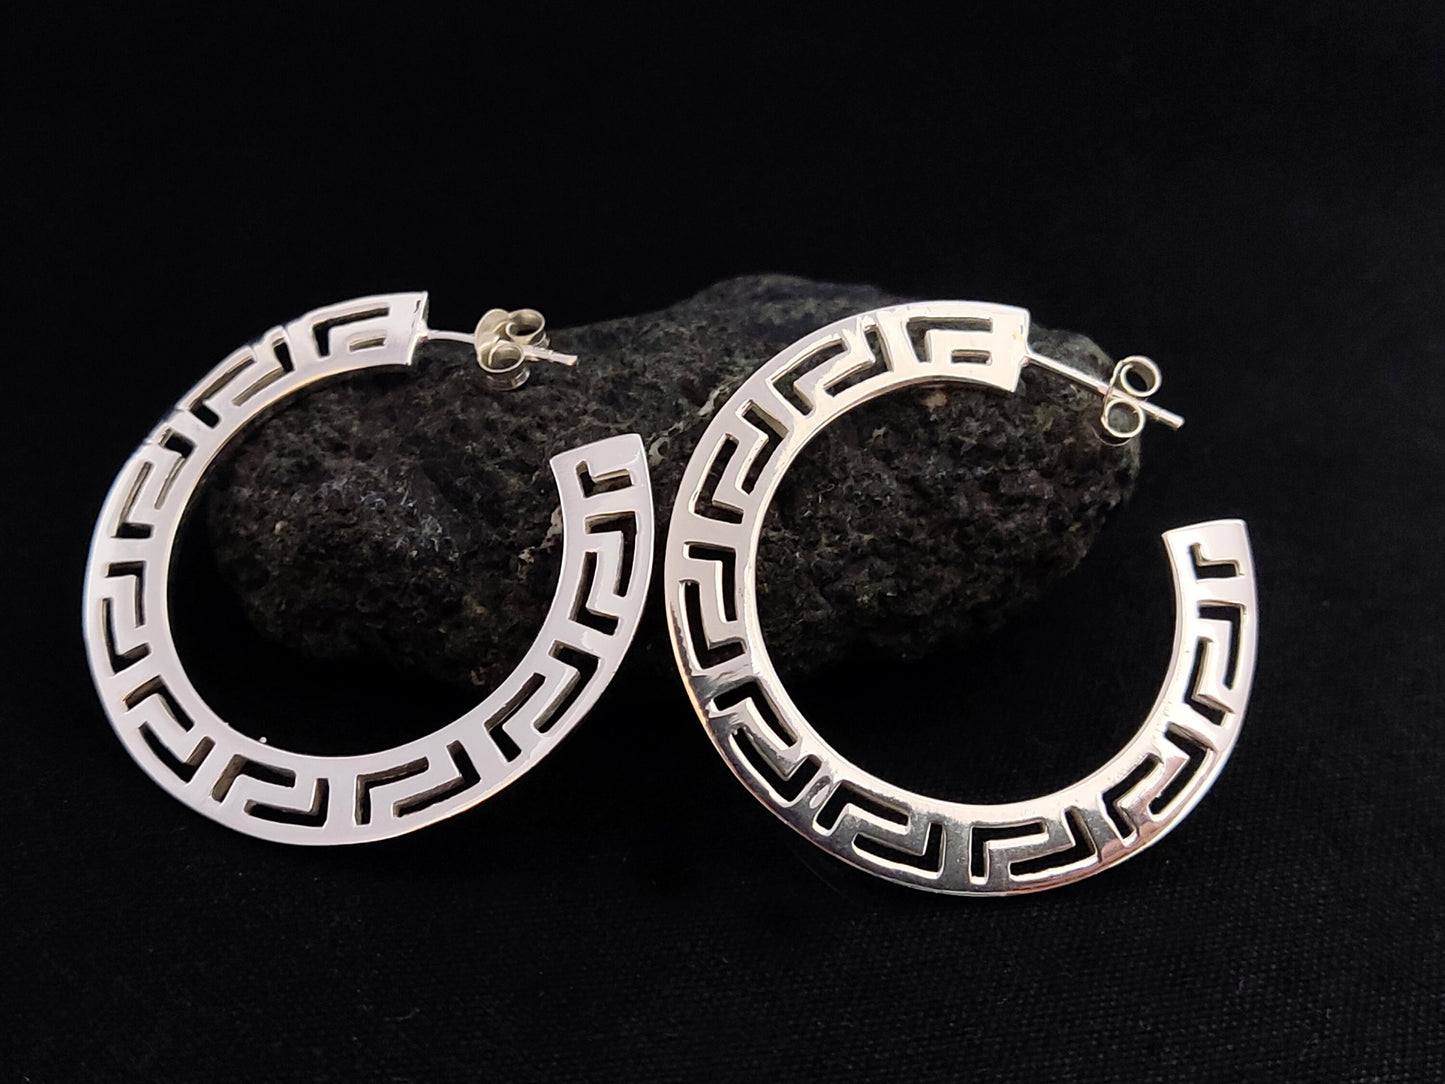 Silver Greek Earrings, Greek Key Flat Big Hoops Earrings 38mm, Griechischer Silber Ohrringe  Bijoux Grecque, Jewelry From Greece, Flat Hoops